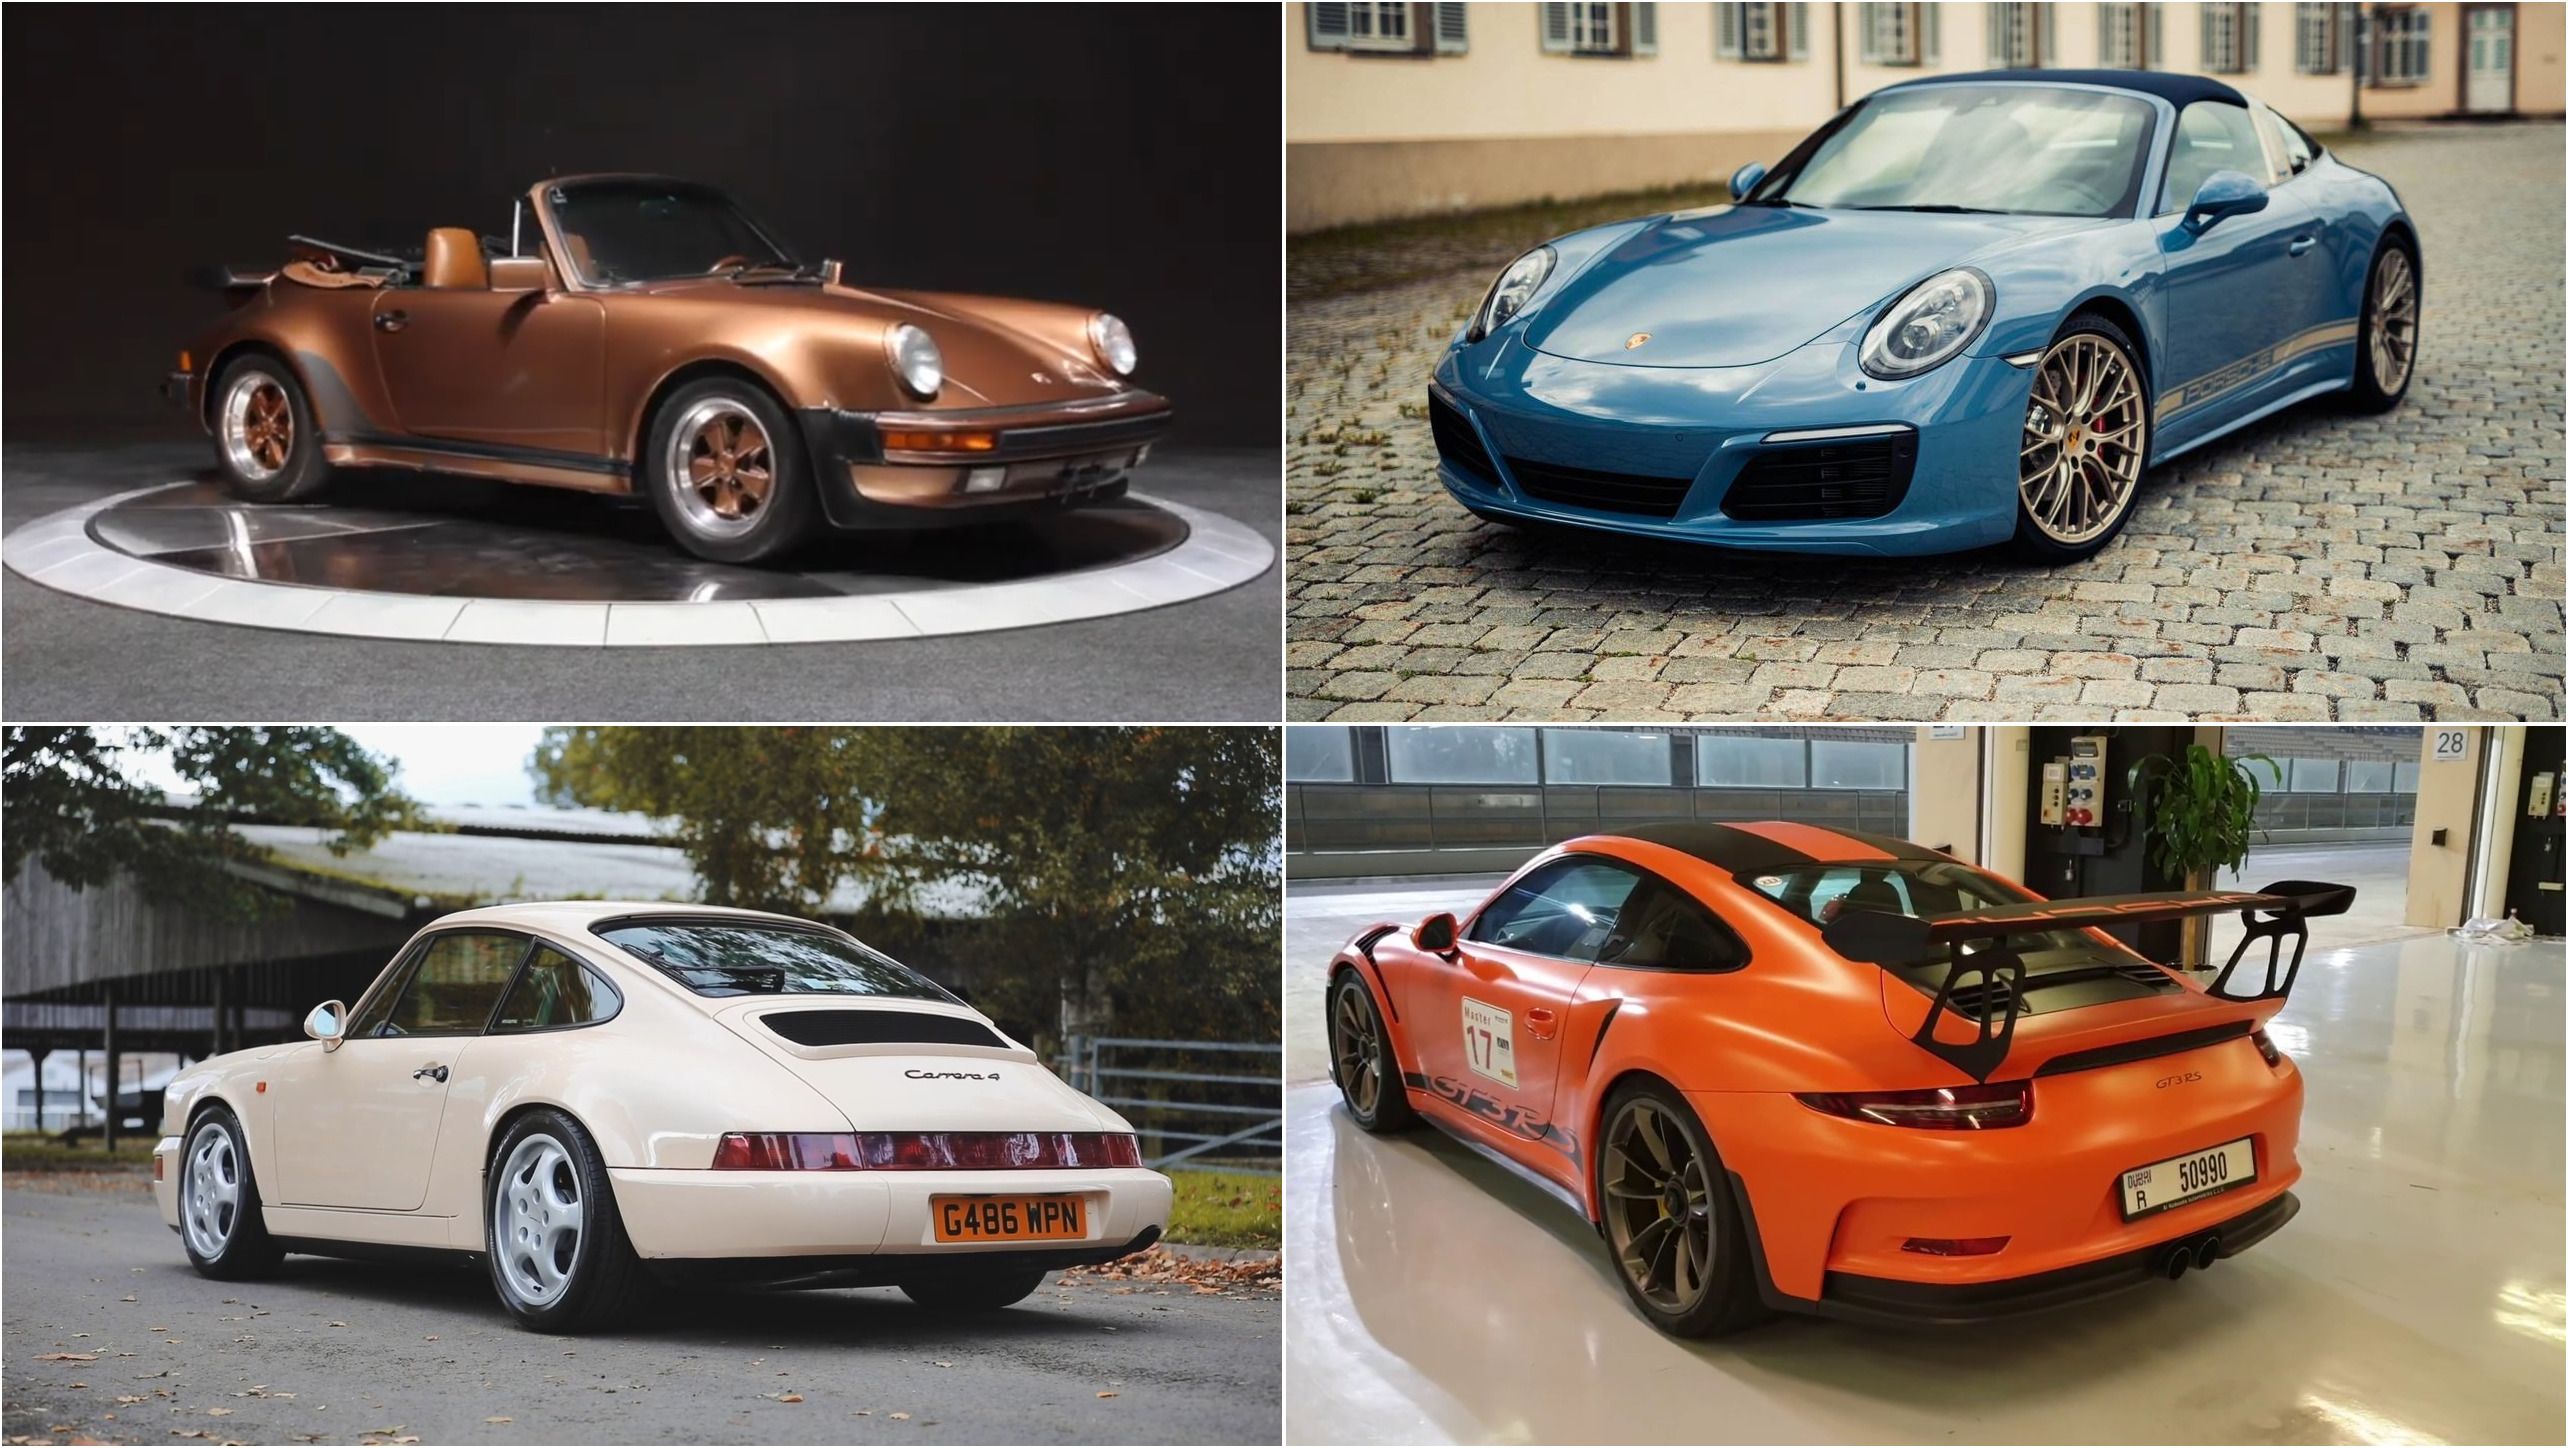 The Best Porsche Paint-To-Sample Colors